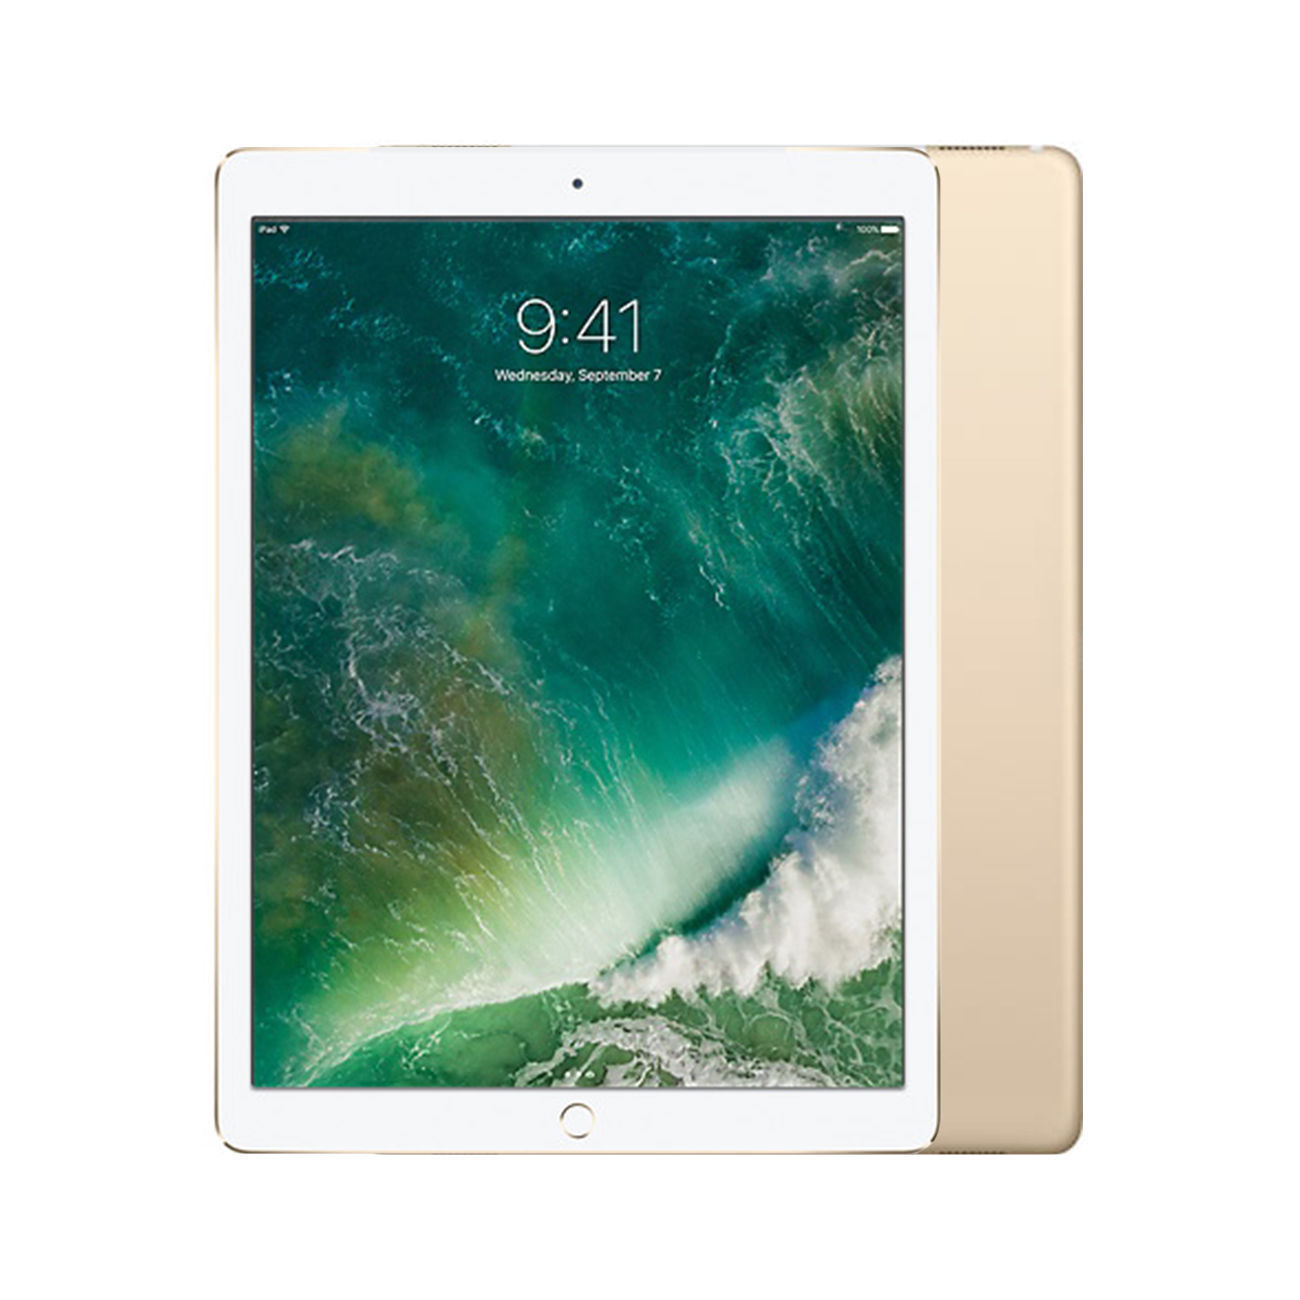 Apple iPad Pro 12.9 Wi-Fi + Cellular [32GB] [Gold] [Good] [12M]